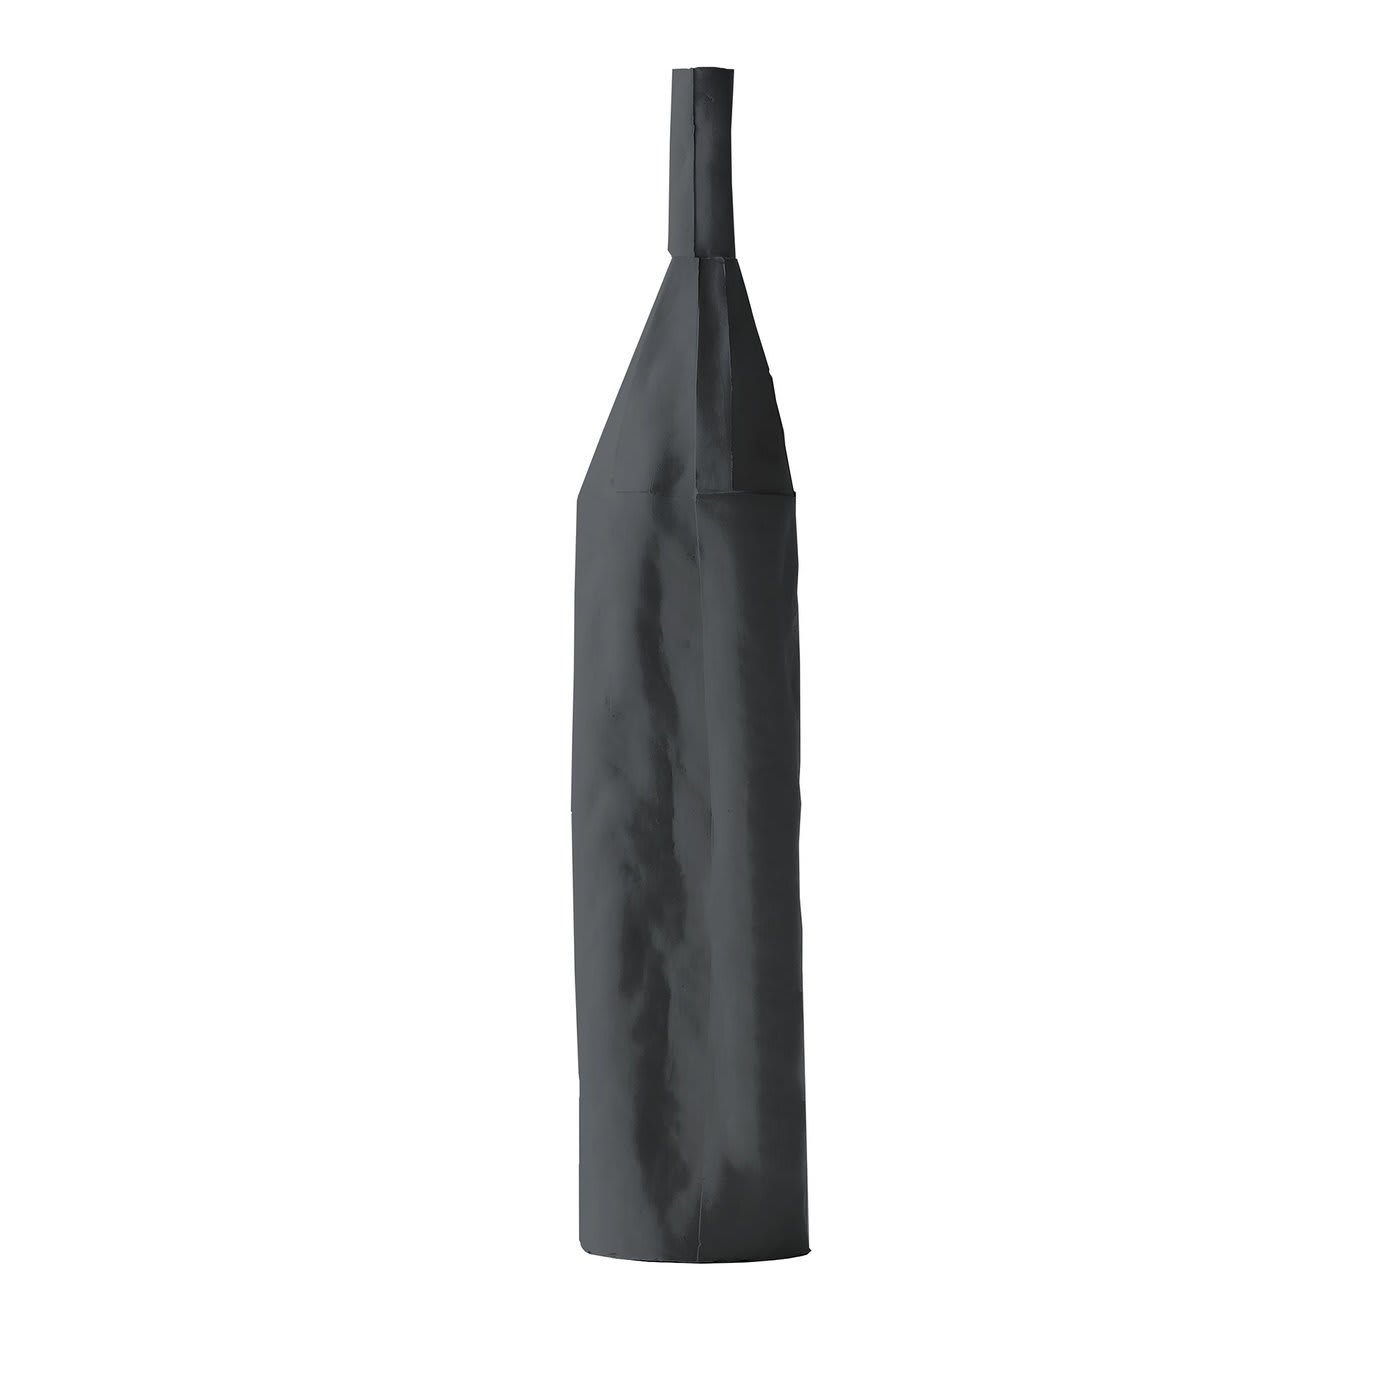 Cartocci Liscia Black Decorative Bottle - Paola Paronetto